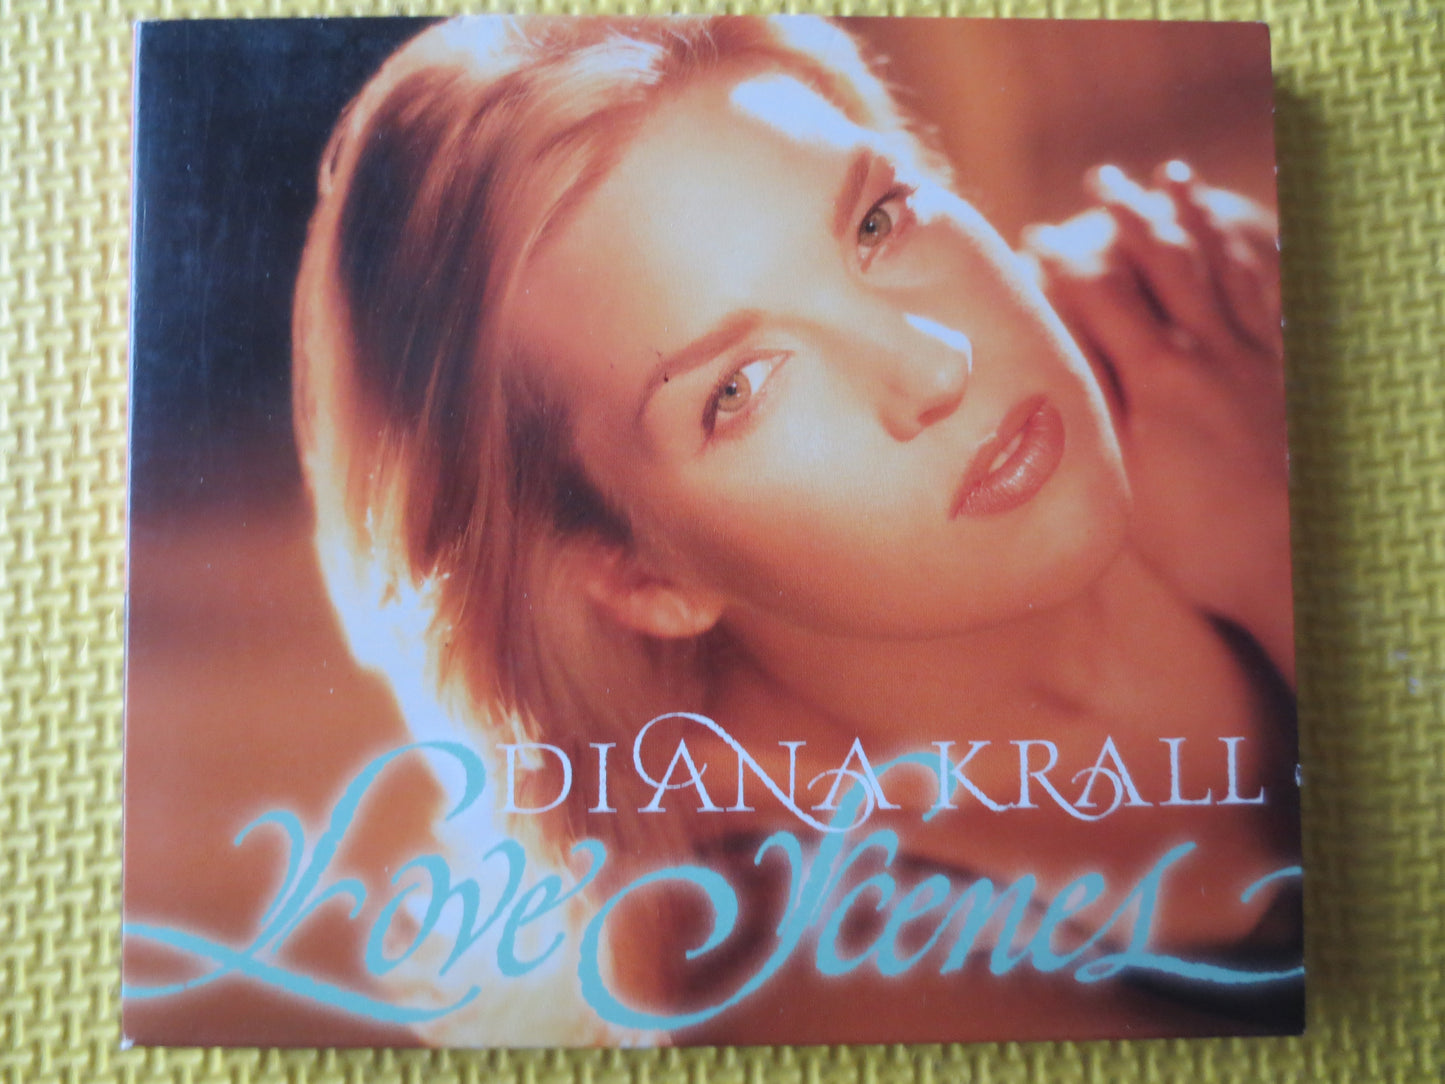 DIANA KRALL, LOVE Scenes, Diana Krall Cd, Jazz Music Cd, Piano Music, Diana Krall Lp, Cd Jazz Music, Cds, 1997 Compact Discs